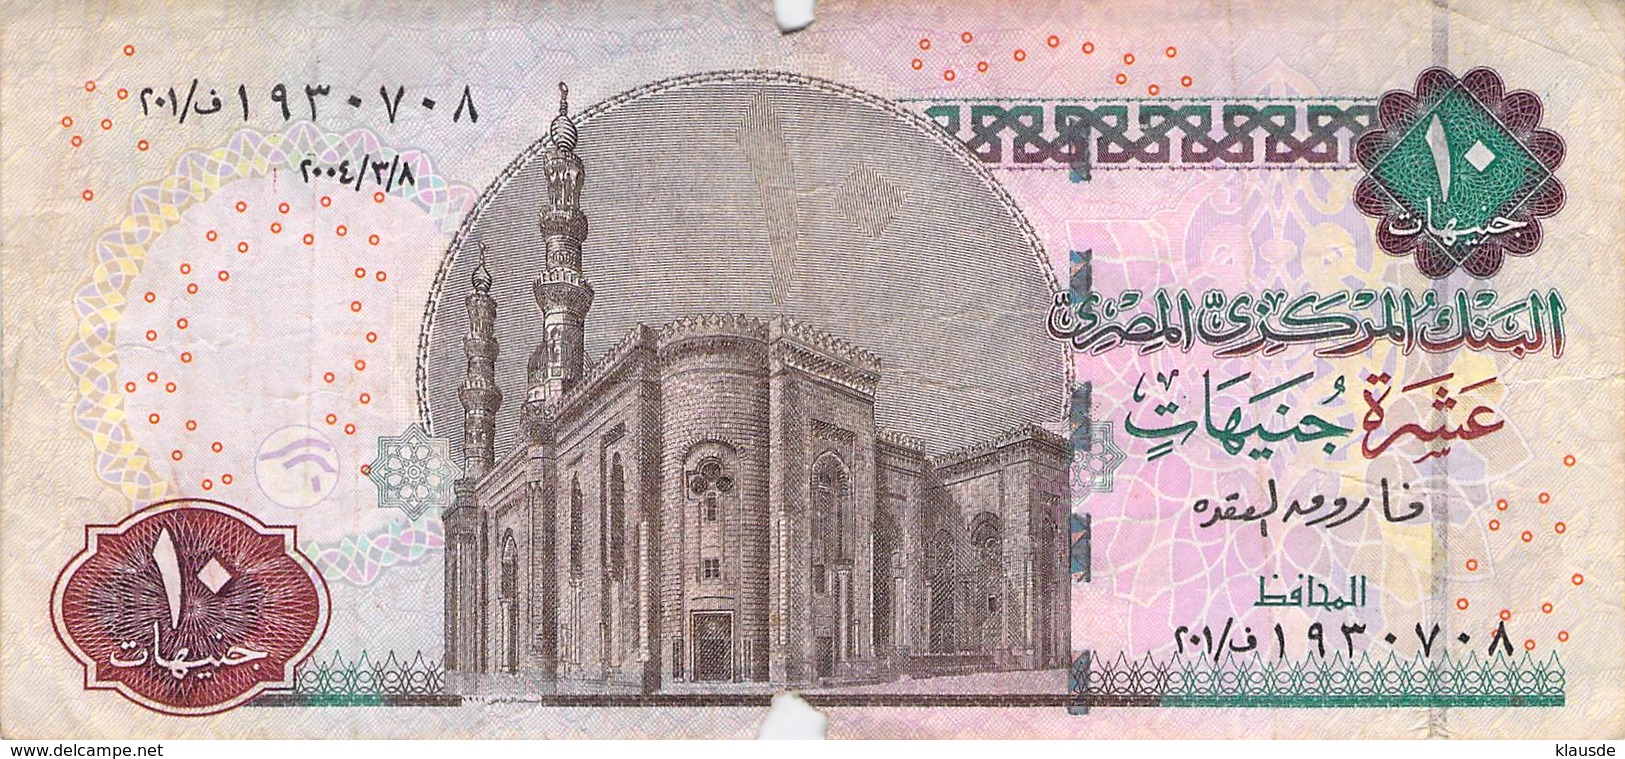 10 Pound (10) Ägypten 2006 VF/F (III) - Aegypten